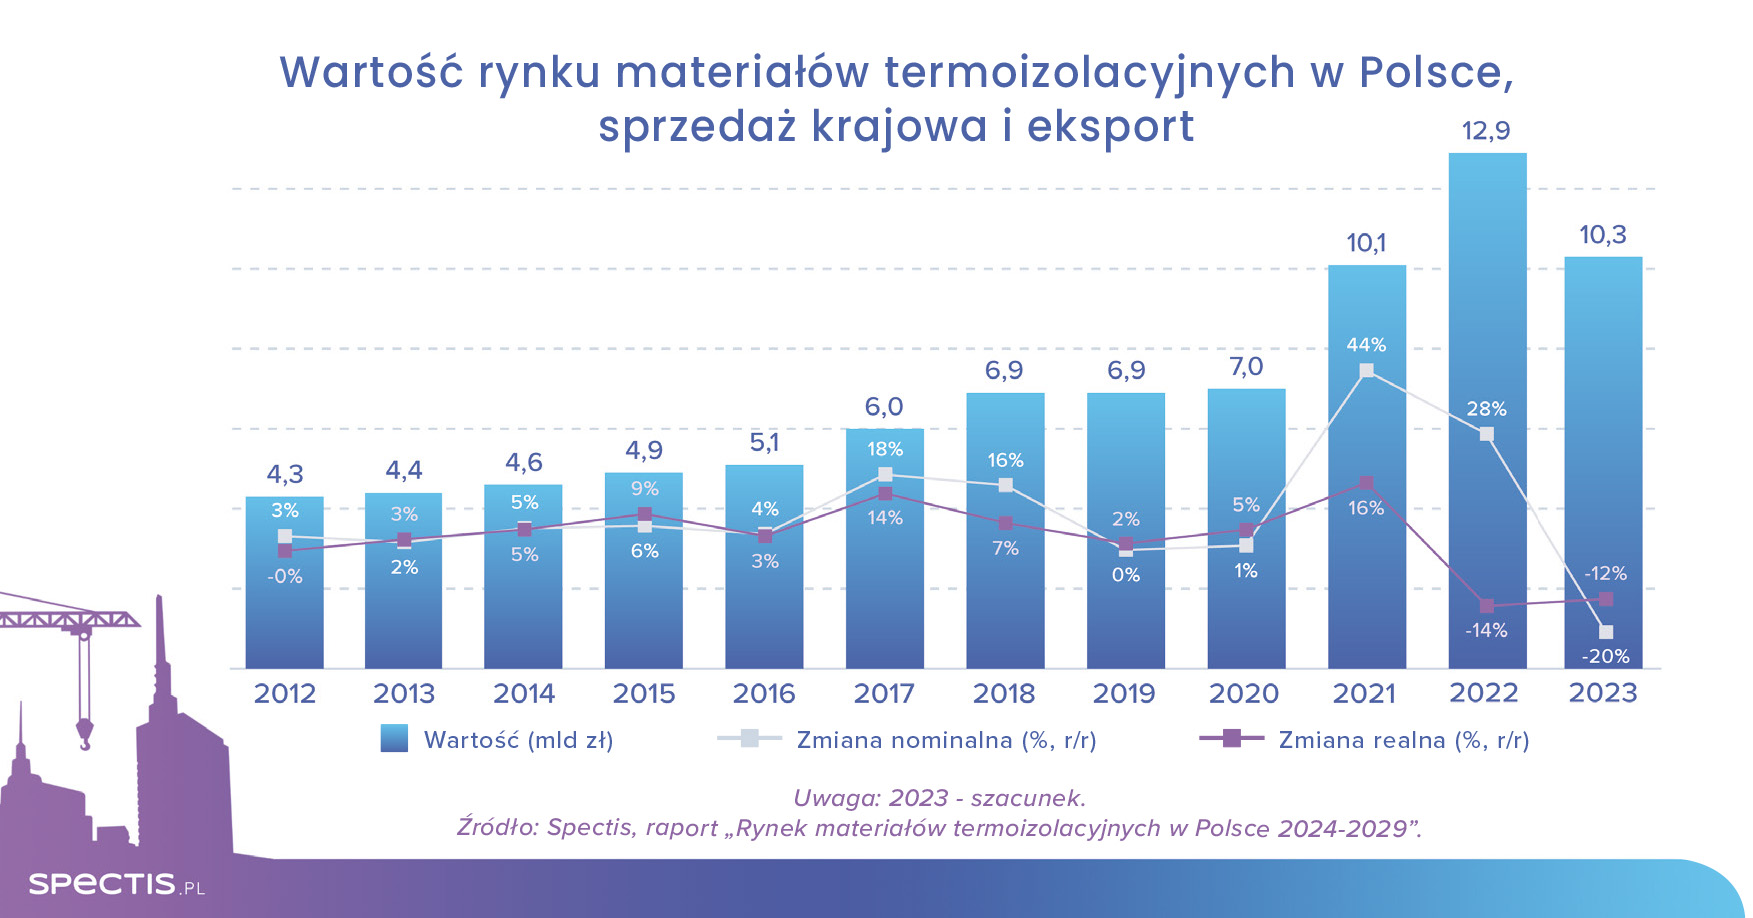 Rynek materiałów termoizolacyjnych w Polsce warty ponad 10 mld zł